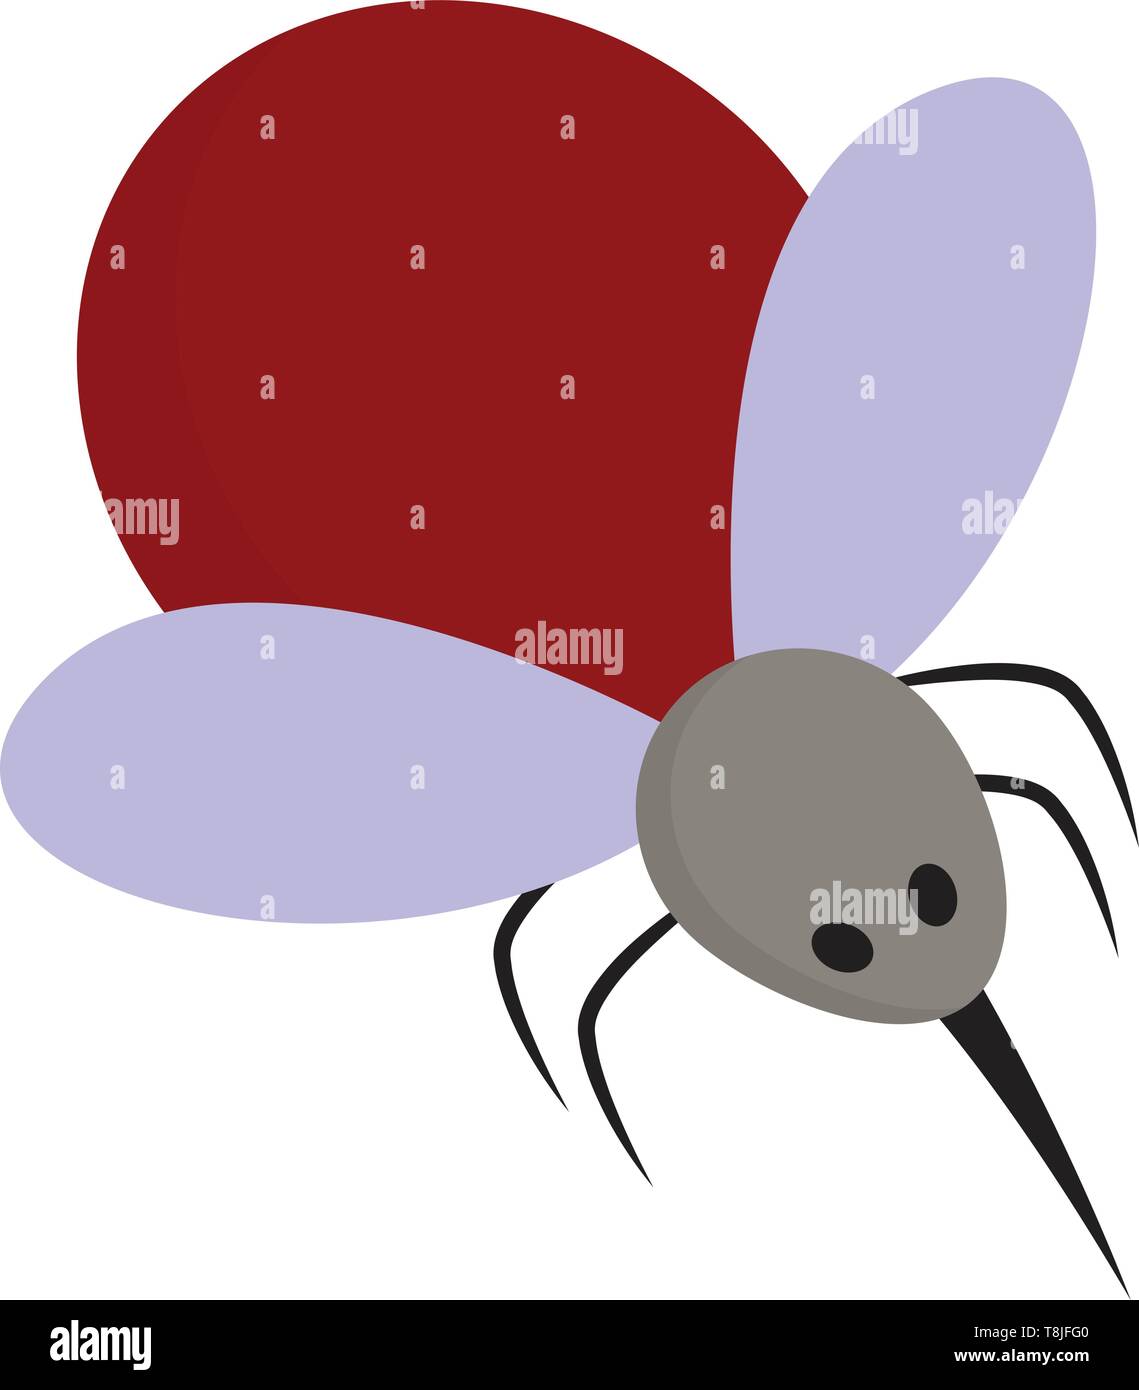 Un moustique en couleur rouge avec deux ailes et une forte sting, Scénario, dessin en couleur ou d'illustration. Illustration de Vecteur